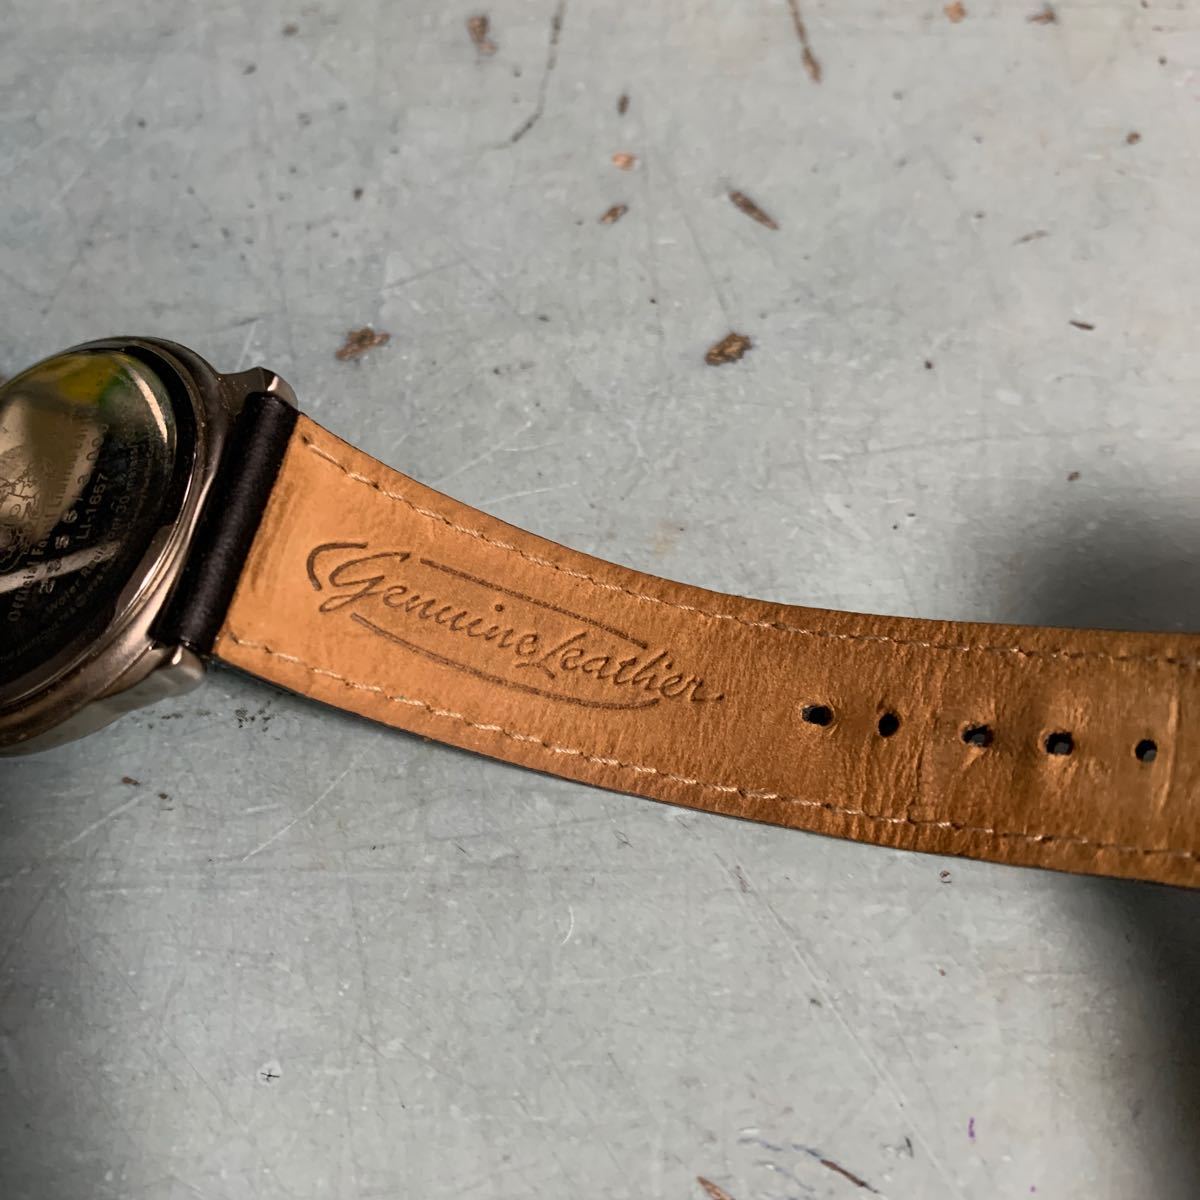  работа товар Simpson z Fossil FOSSIL наручные часы ограниченный выпуск 3000 шт производство ограничение наручные часы 2556 номер /3000 шт средний LI-1657 (8707)